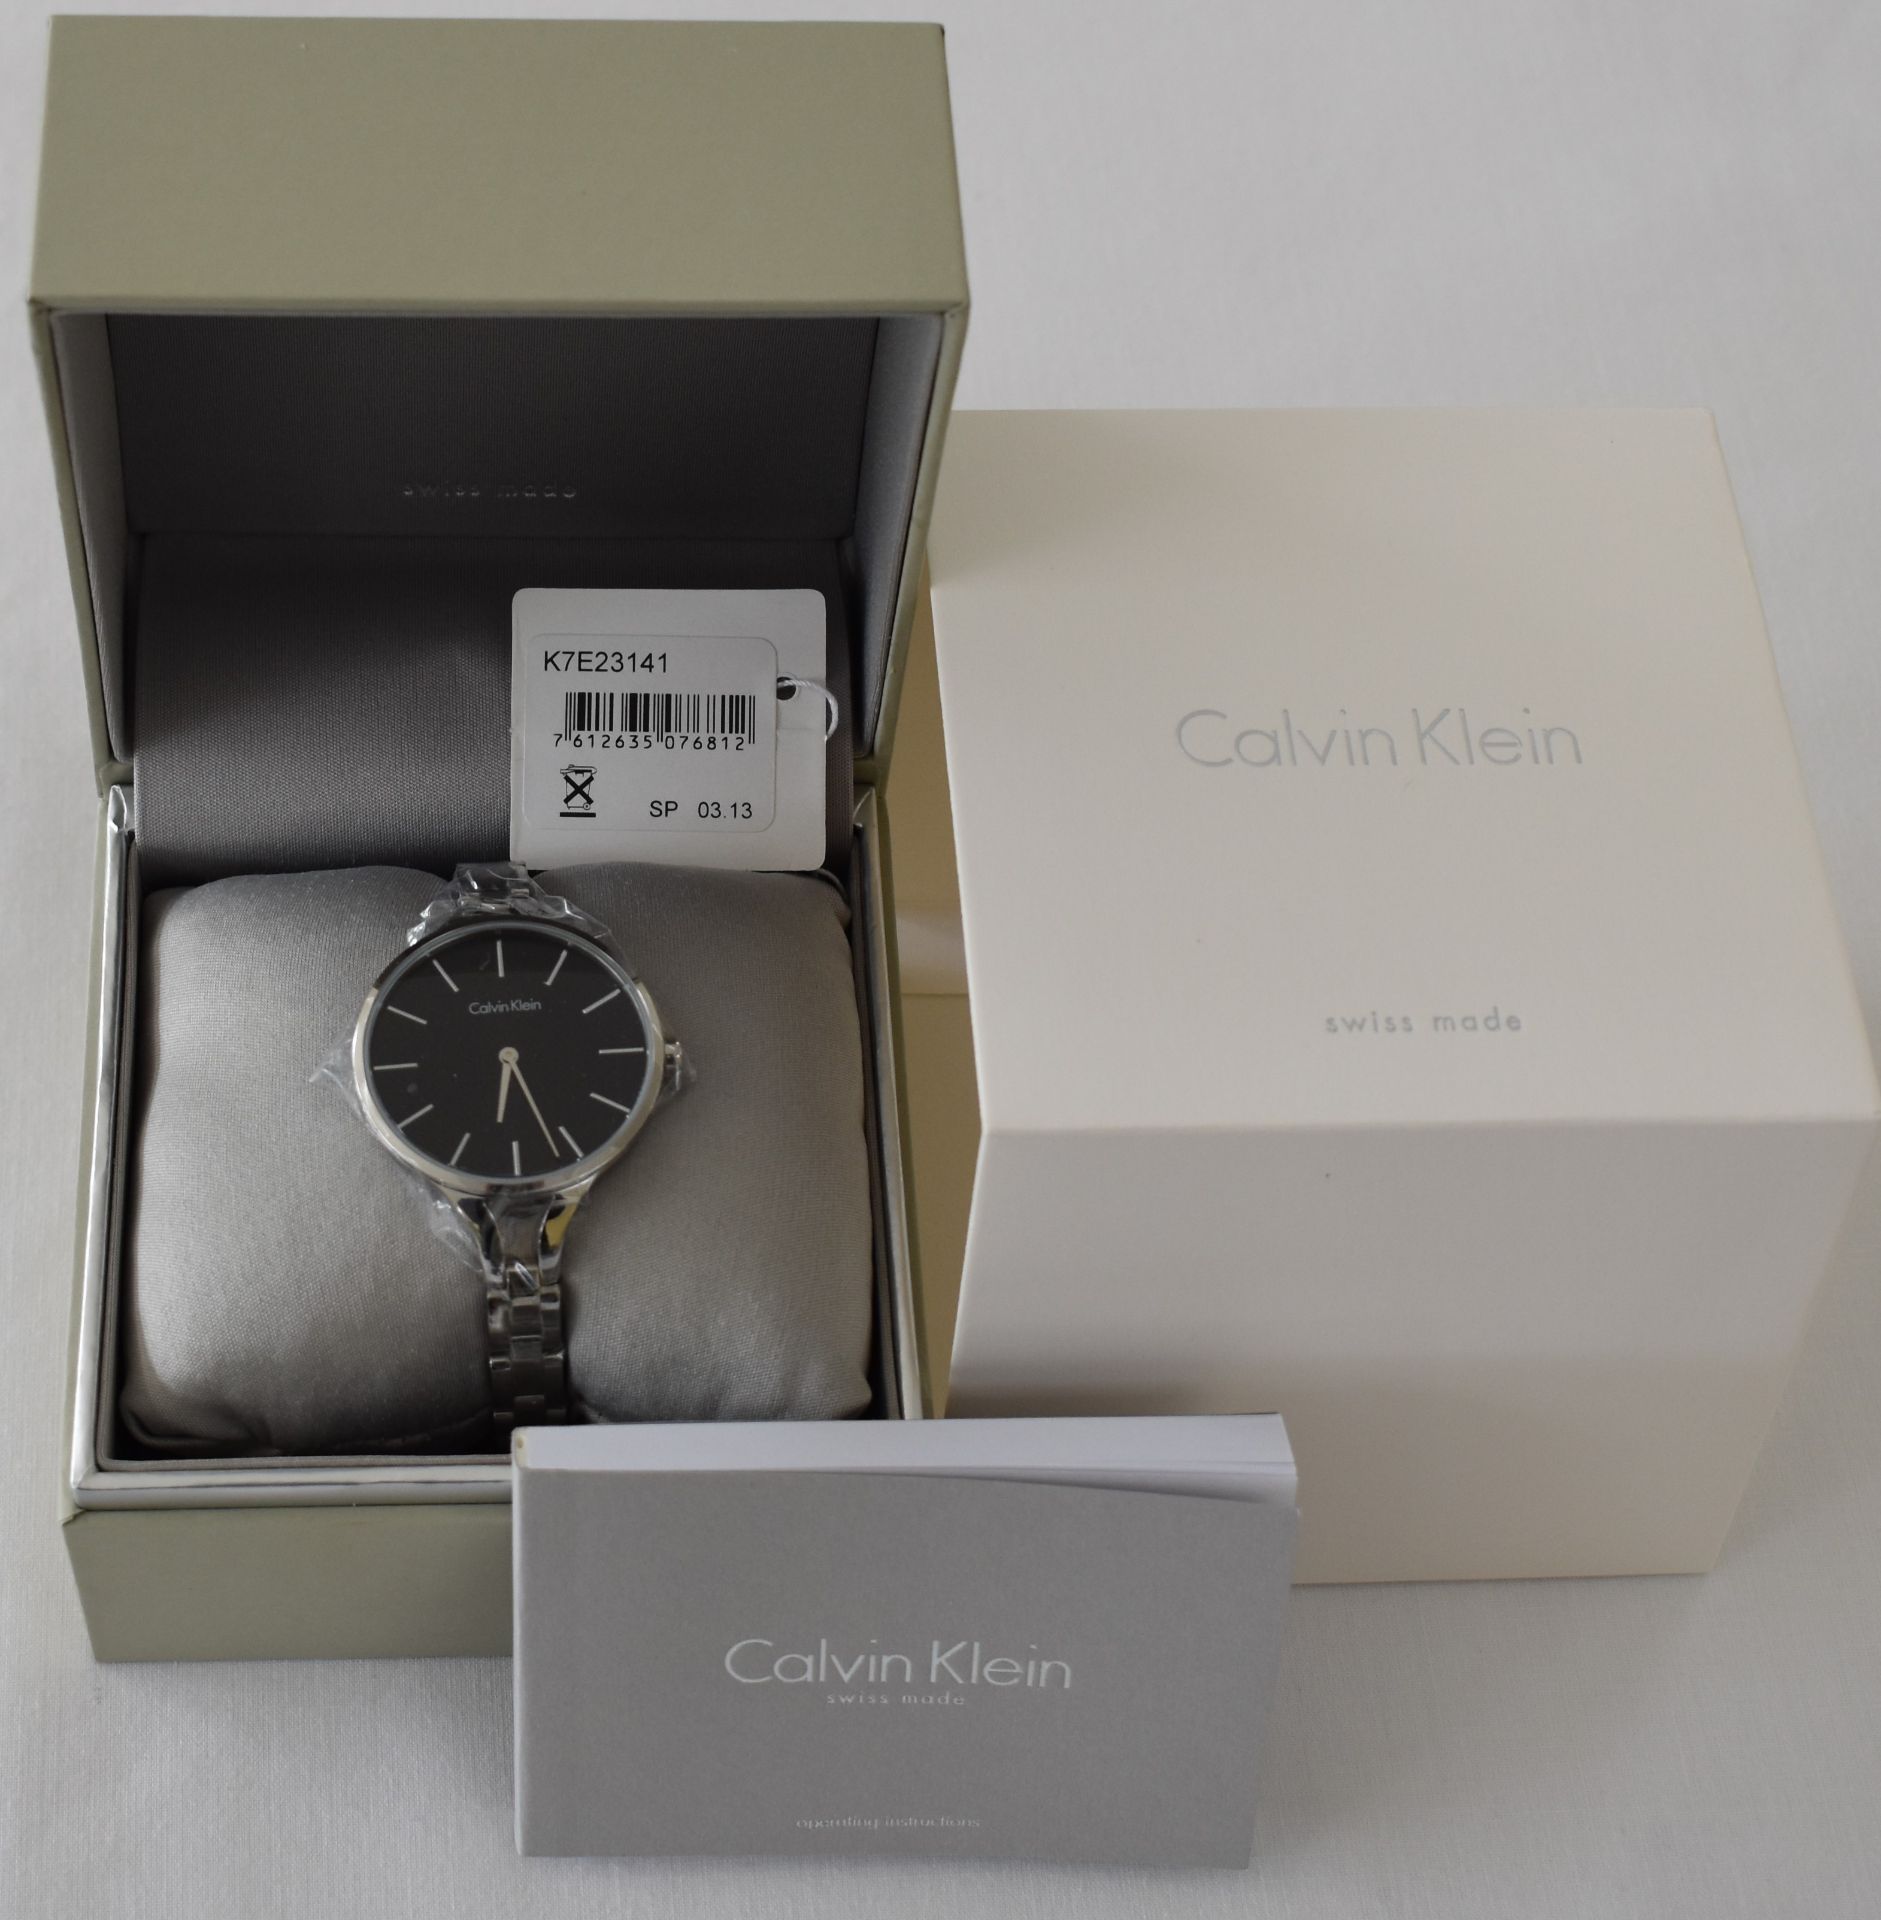 Calvin Klein K7E23141 Ladies Watch